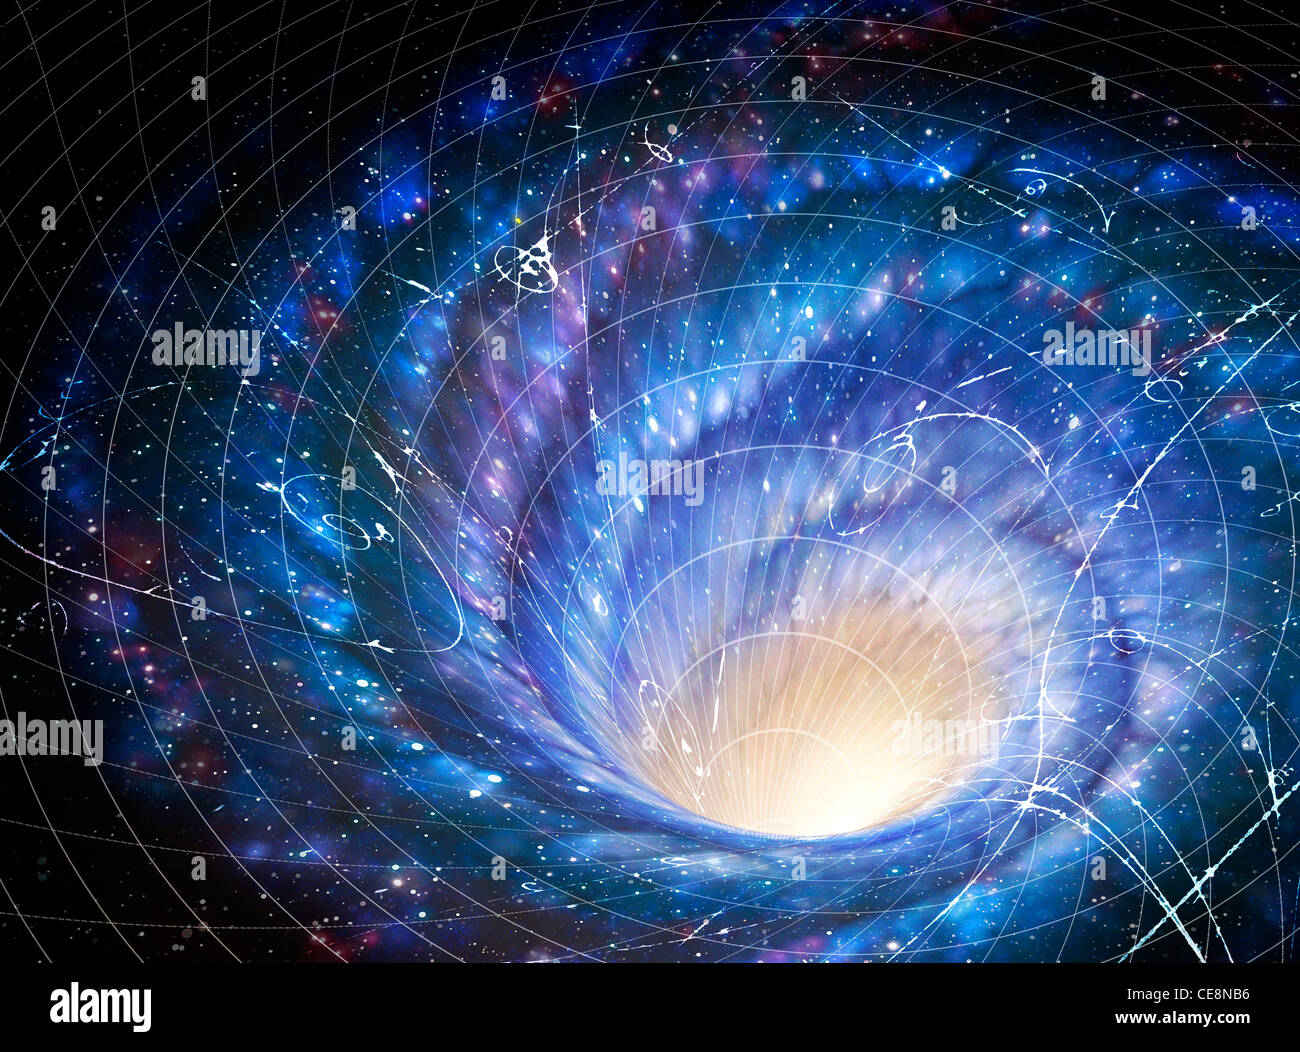 Abbildung zeigt Galaxy Riesen Whirlpool im Raum Galaxie Auswirkungen auf Raum-Bild zeigt wie Schwerkraft Galaxie verzieht lokale Stockfoto